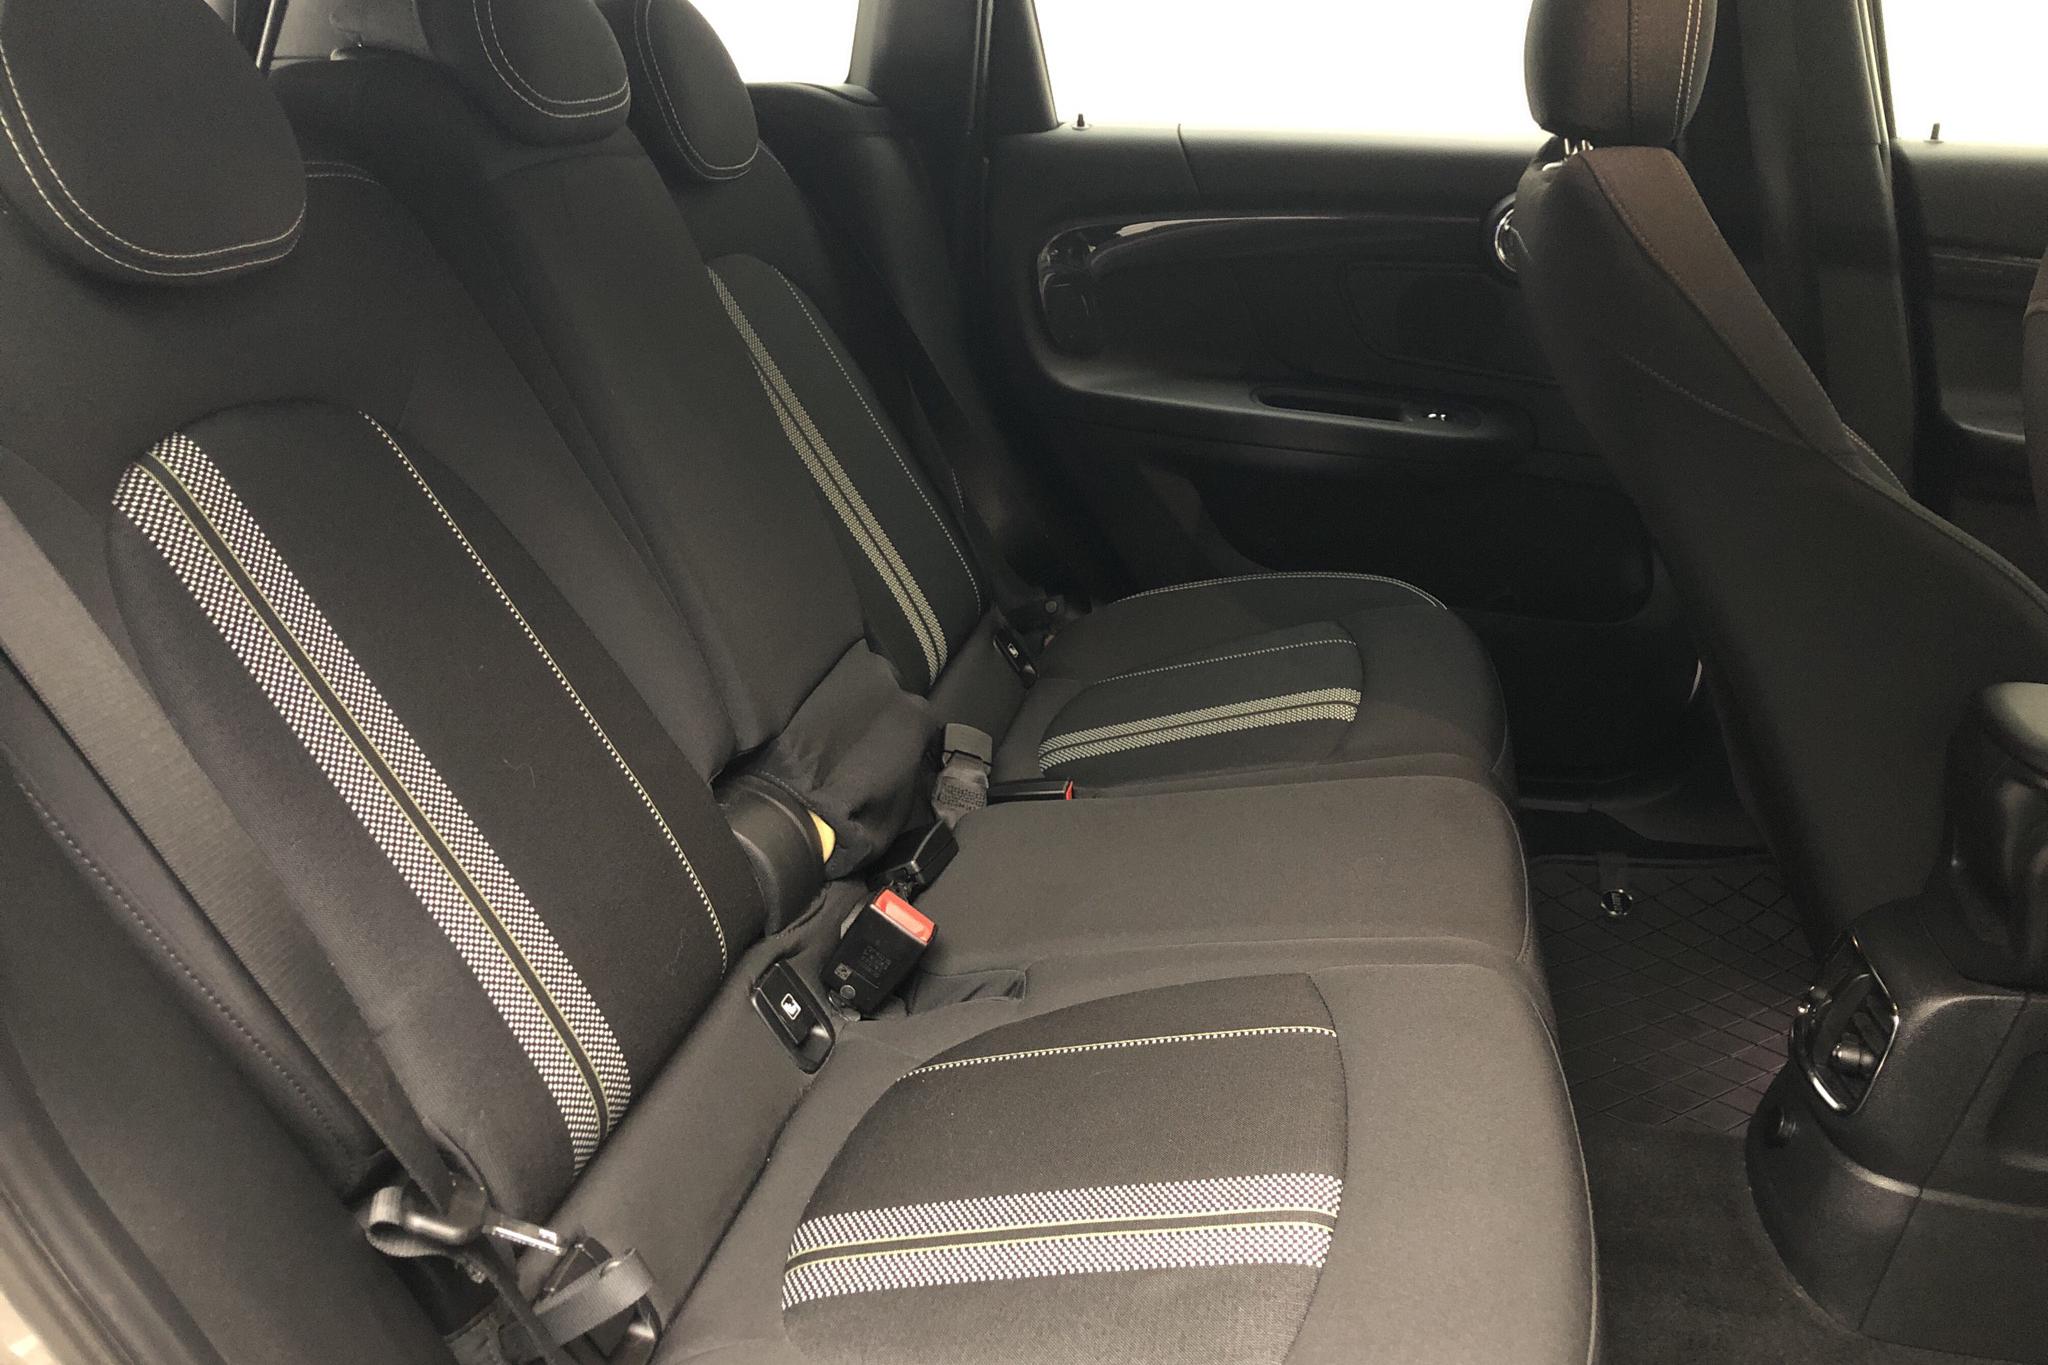 MINI Cooper S E ALL4 Countryman, F60 (224hk) - 97 750 km - Automatic - gray - 2018